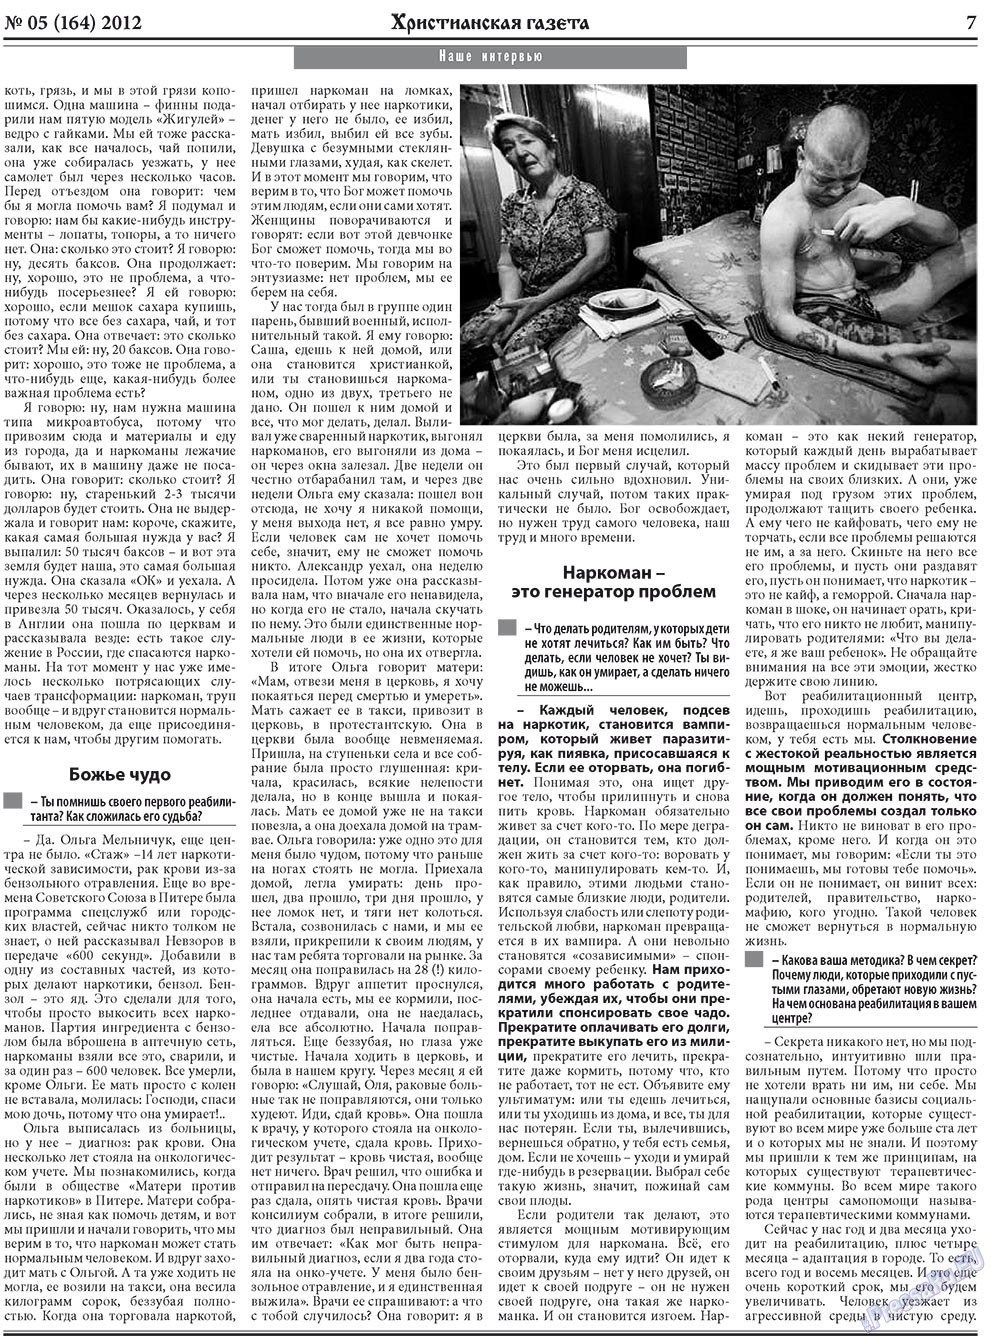 Hristianskaja gazeta (Zeitung). 2012 Jahr, Ausgabe 5, Seite 7